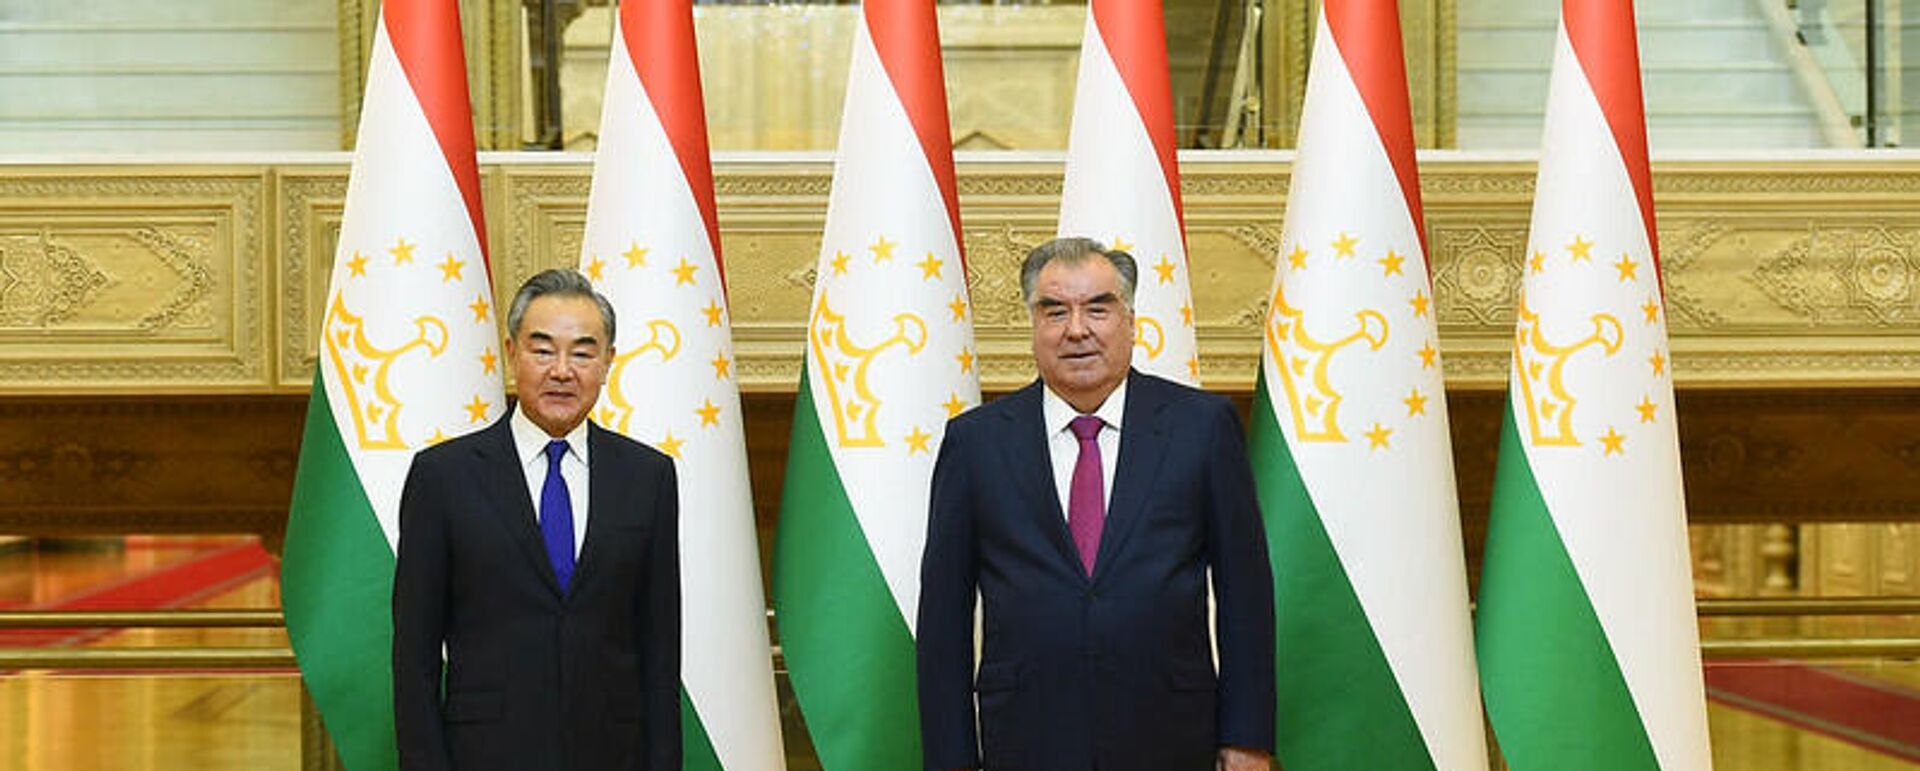 Президент Таджикистана Эмомали Рахмон провел встречу с министром иностранных дел Китая Ван И - Sputnik Тоҷикистон, 1920, 14.07.2021